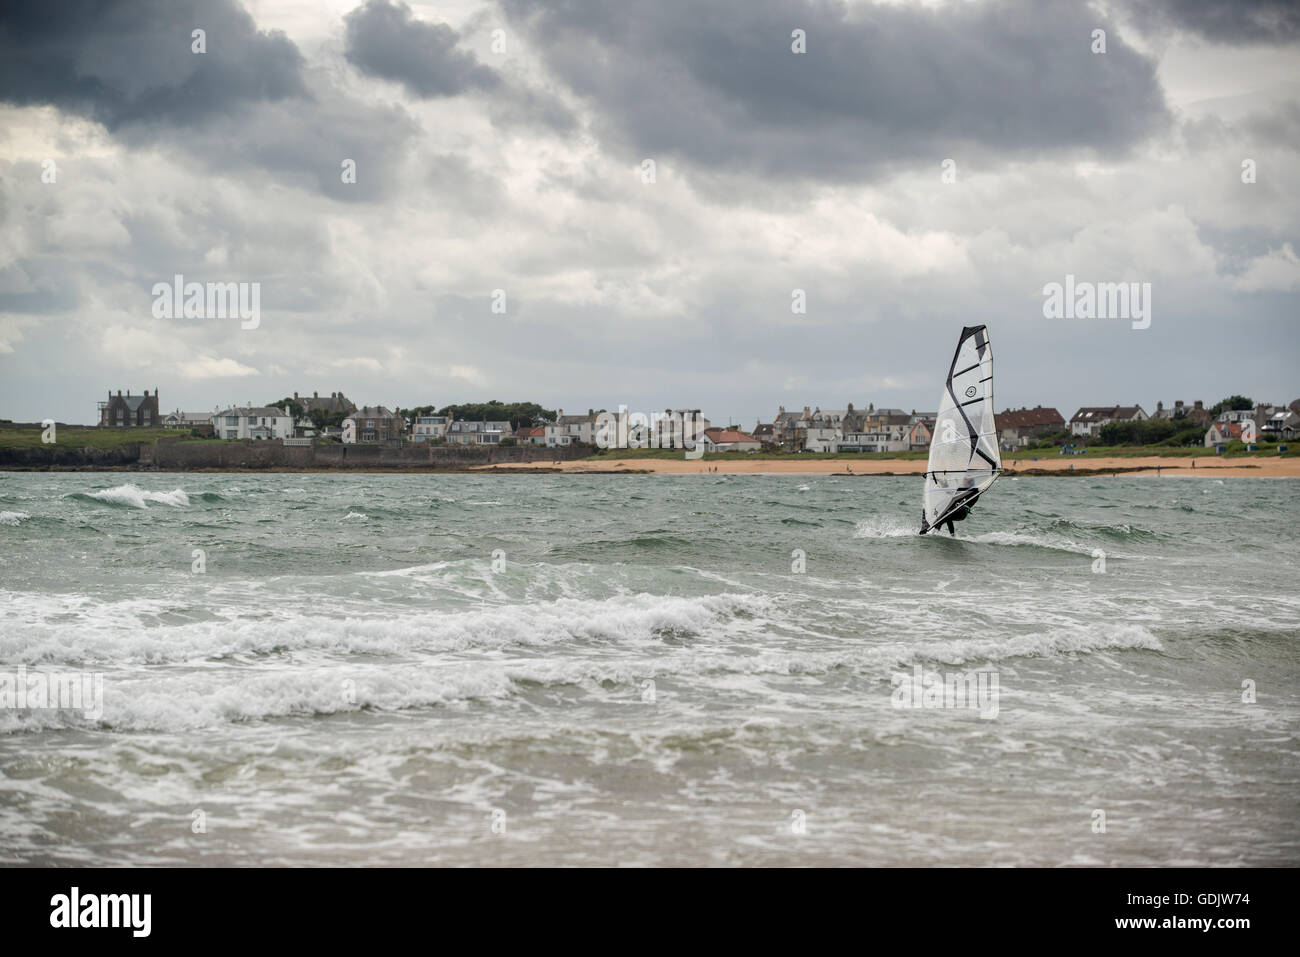 Tablas de windsurf en el mar, en el pueblo costero de Fife Elie Foto de stock